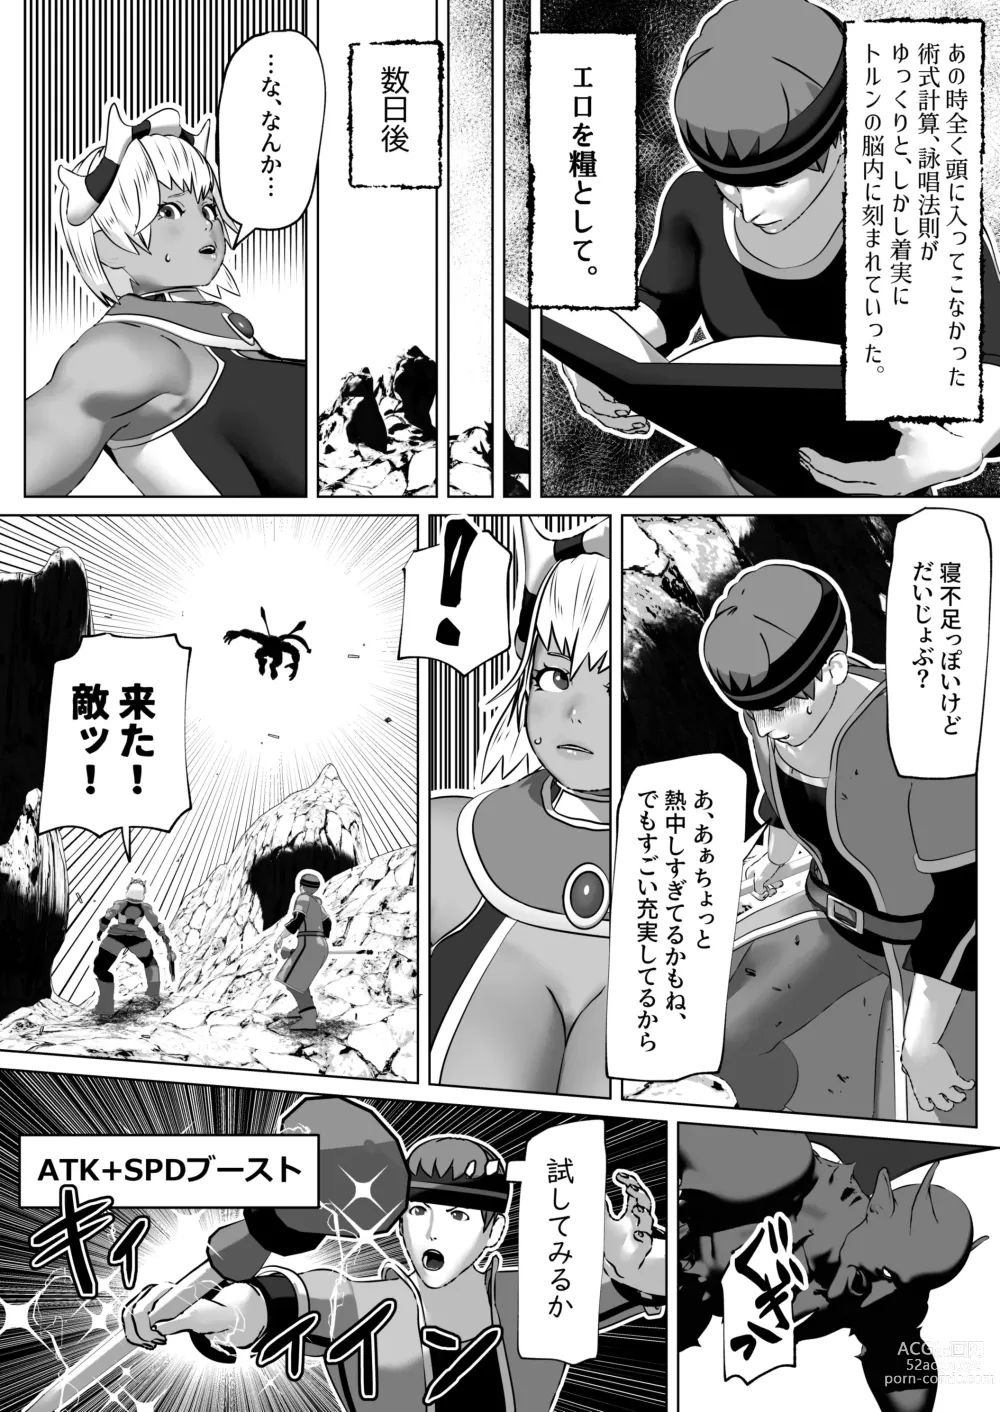 Page 9 of doujinshi Muramura Saseru Buff Mahou